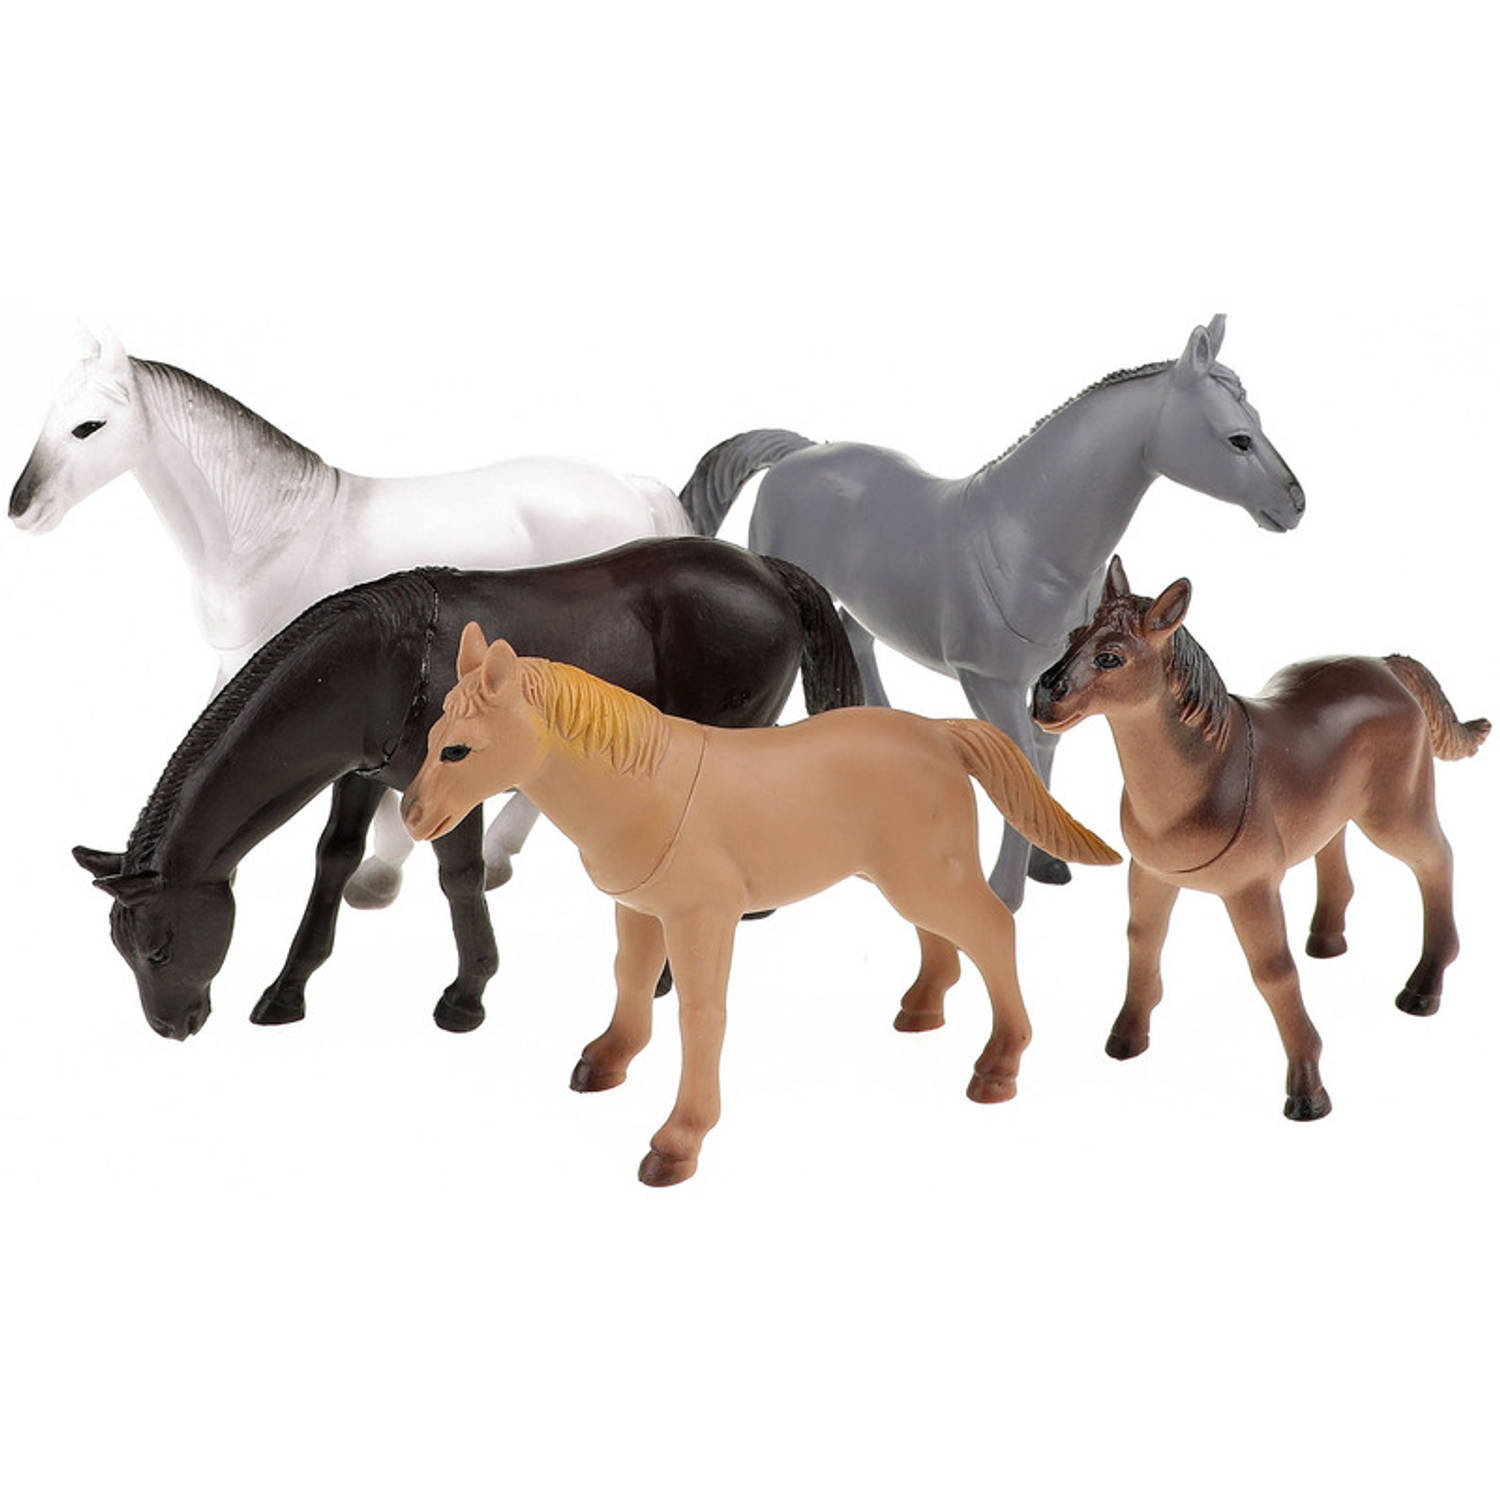 Geven terug Onmogelijk 5x Plastic speelgoed paarden figuren 14 cm - Speelfigurenset | Blokker